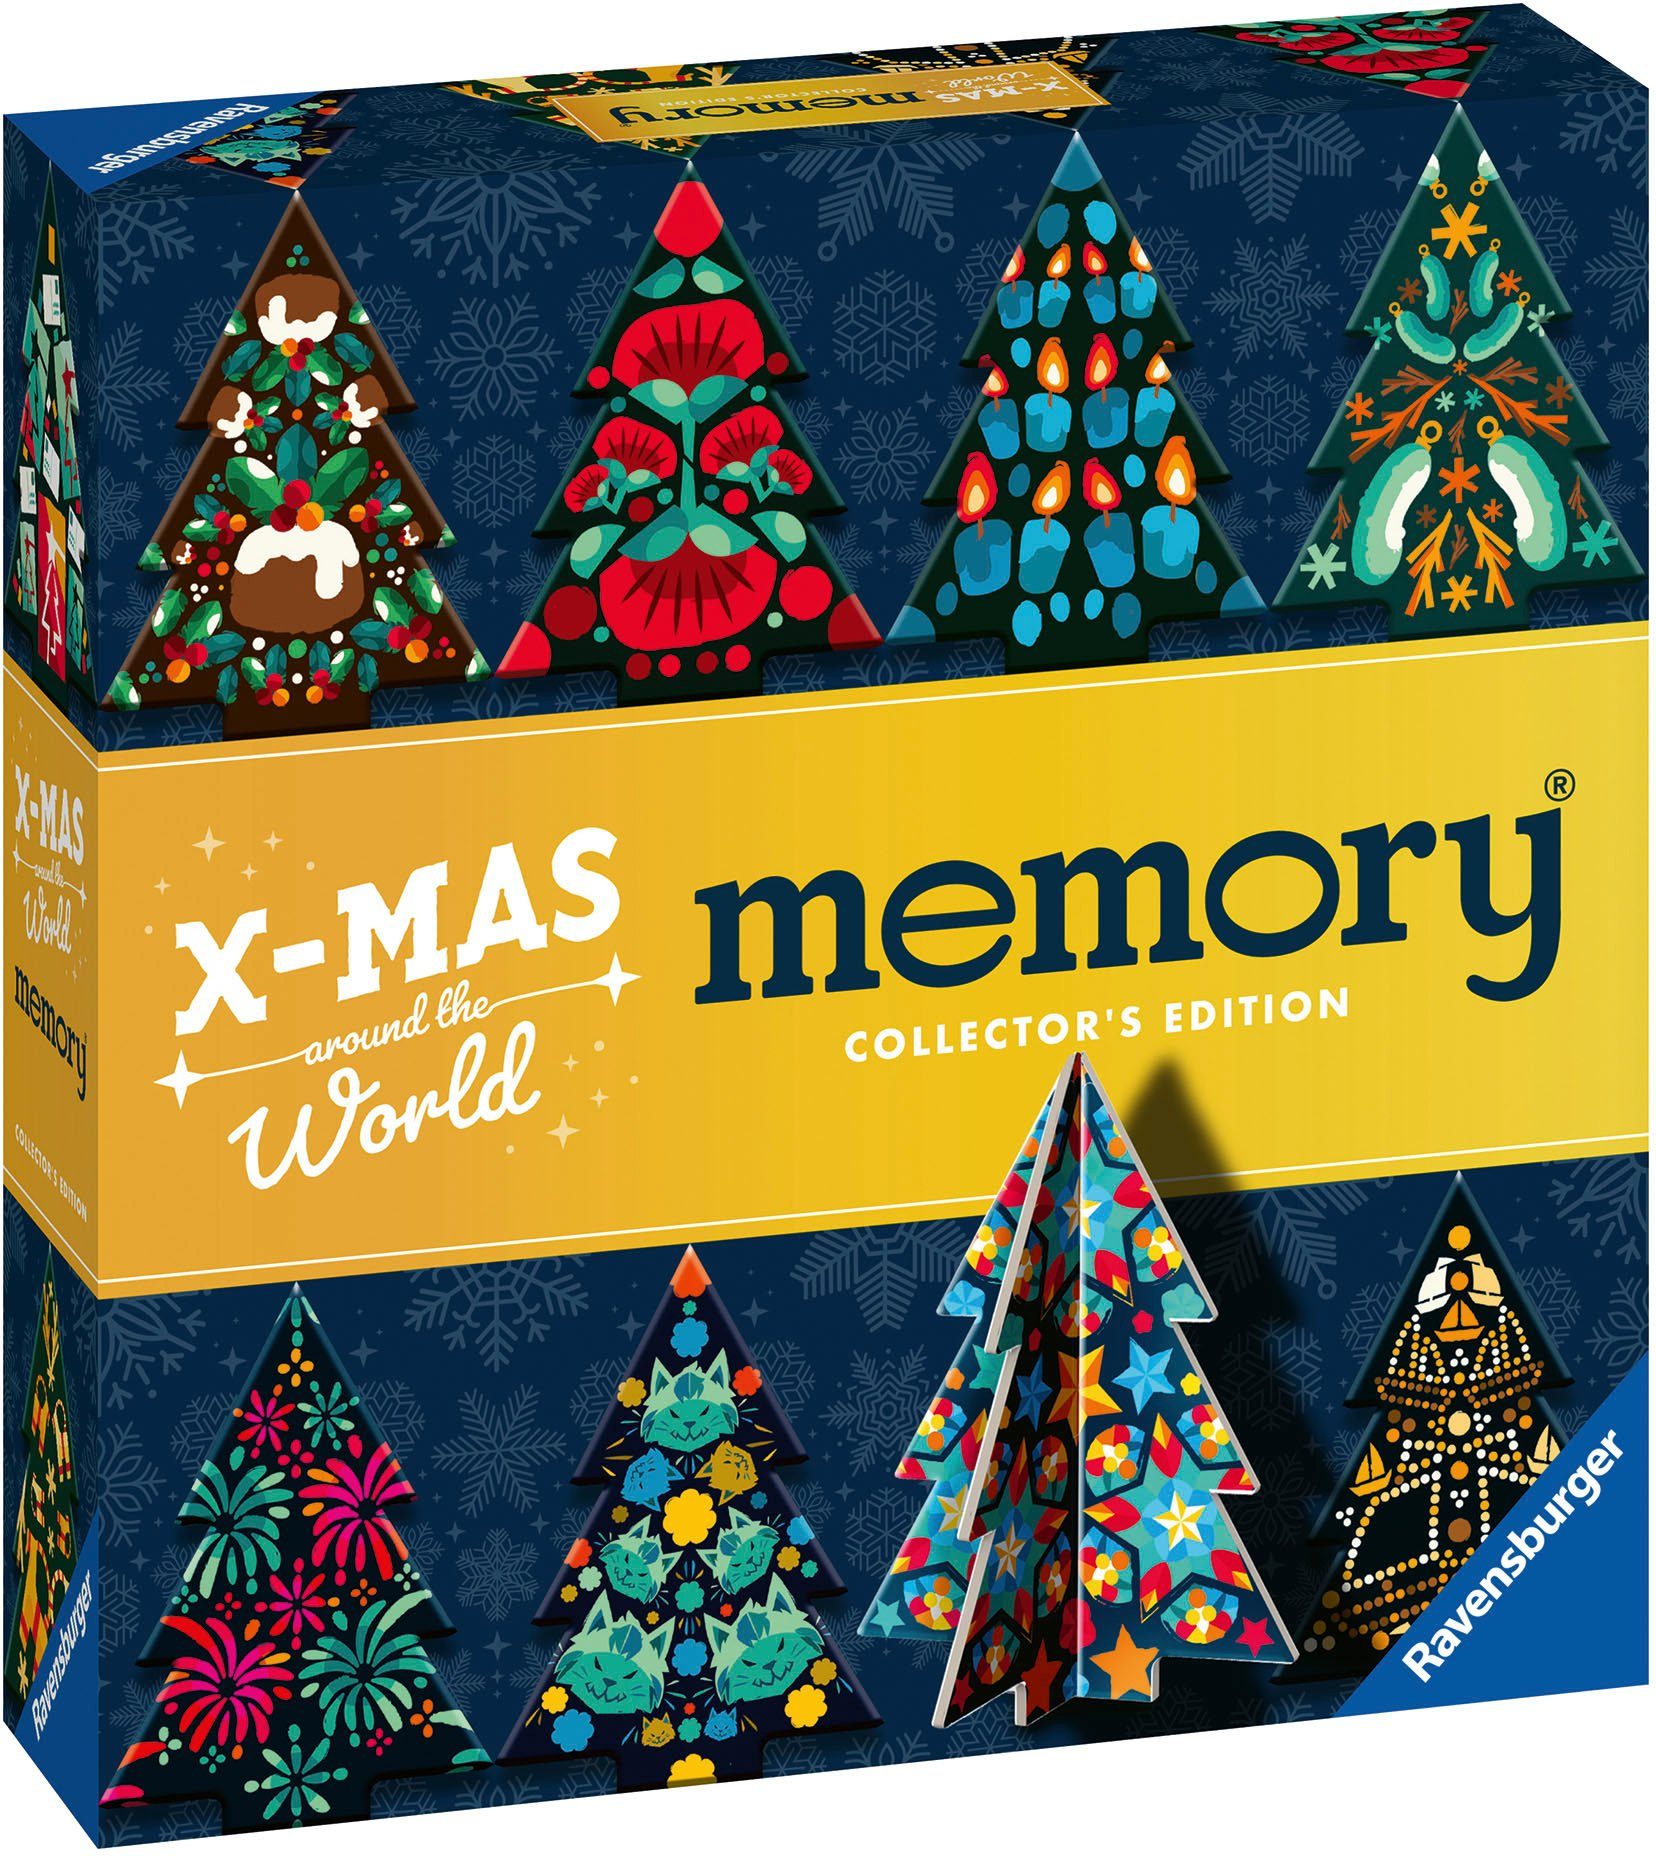 Ravensburger Spiel, Merkspiel memory® Collector's Edition, X-Mas around the World, Made in Europe; FSC® - schützt Wald - weltweit